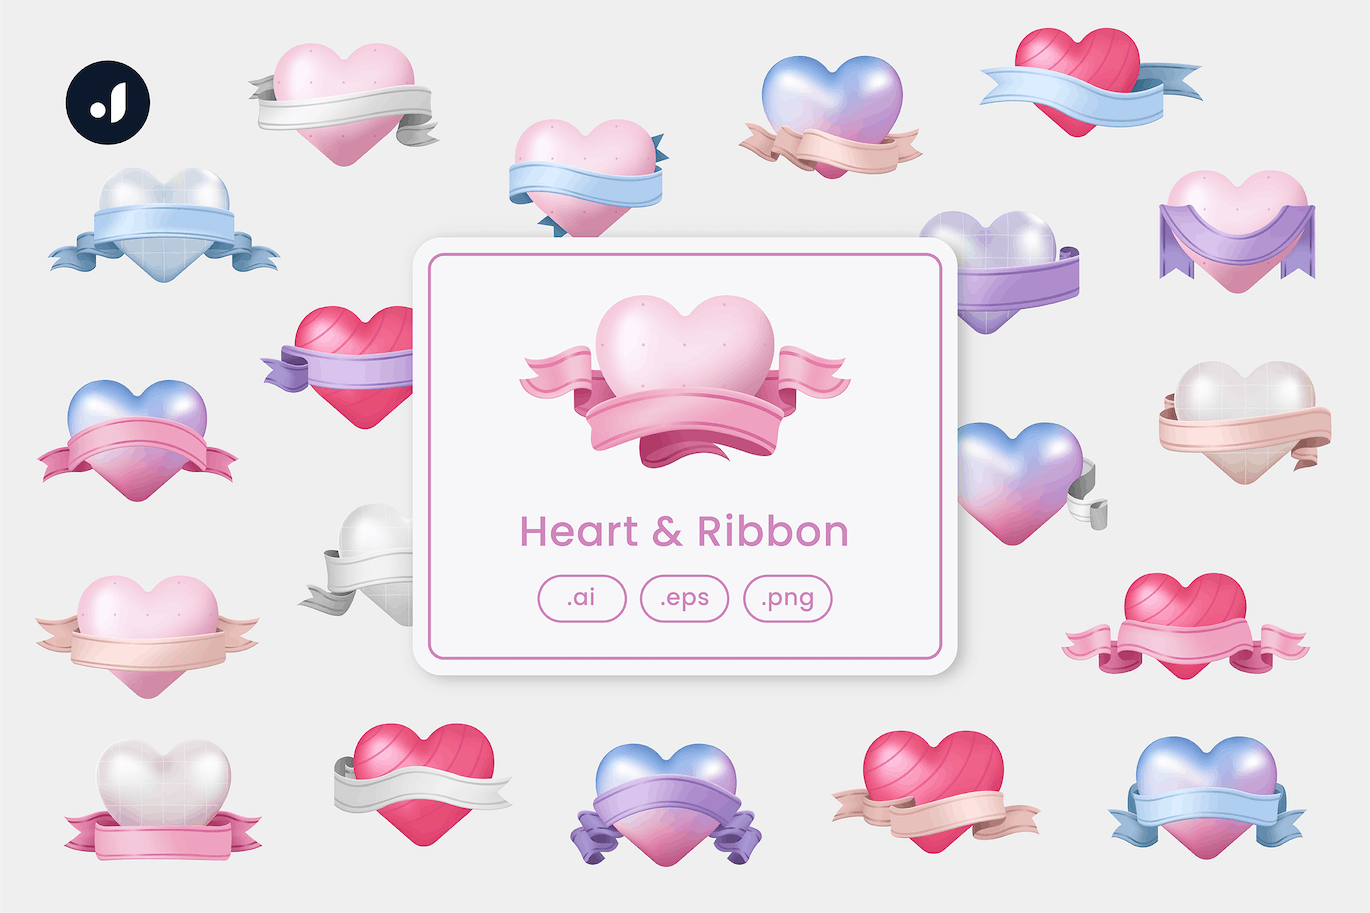 丝带爱心情人节元素插画 Heart & Ribbon Illustration 设计素材 第1张